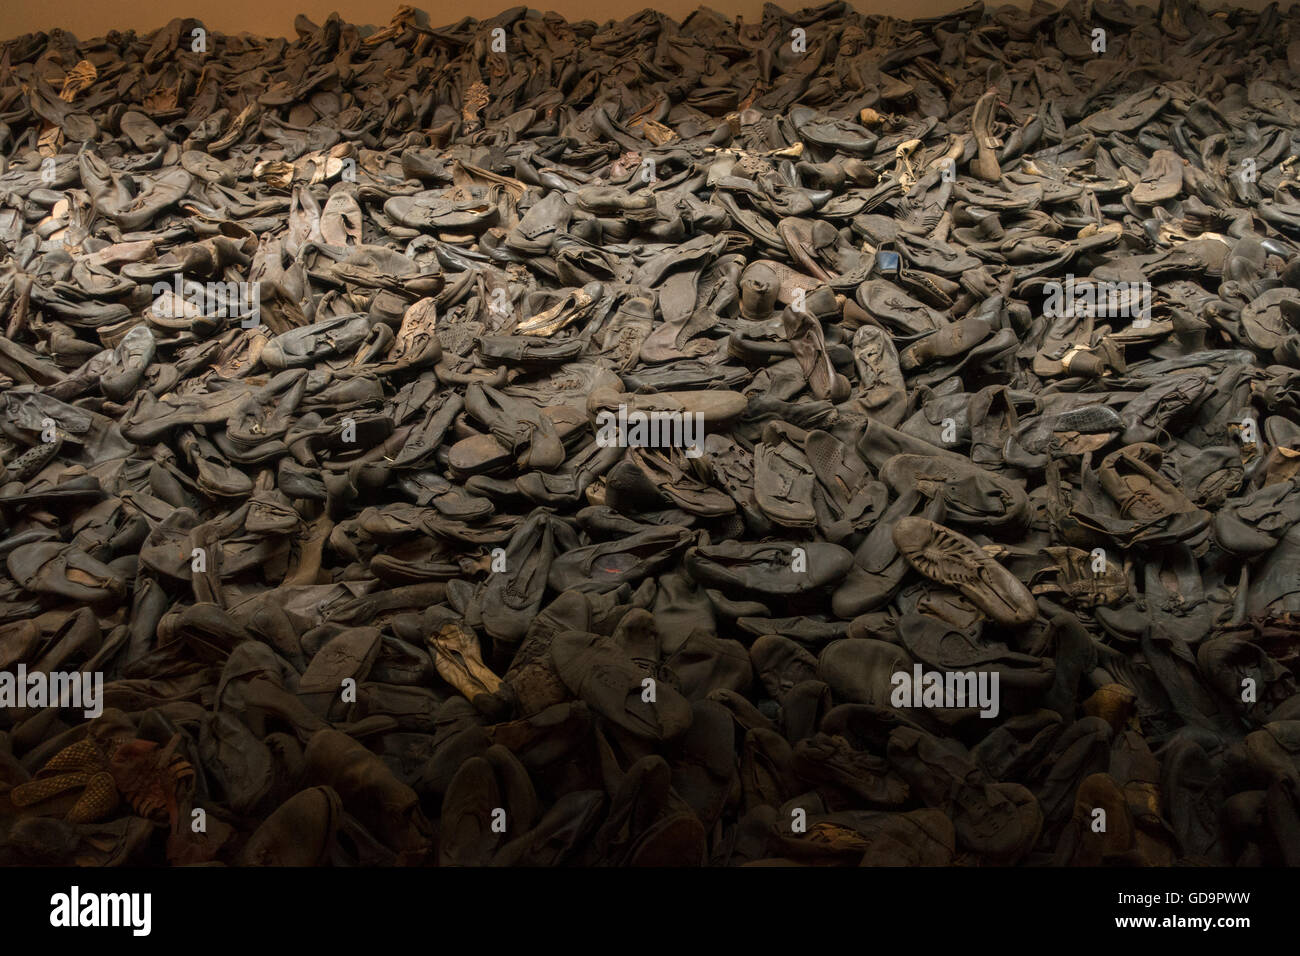 United States Holocaust memorial museum DC Stock Photo